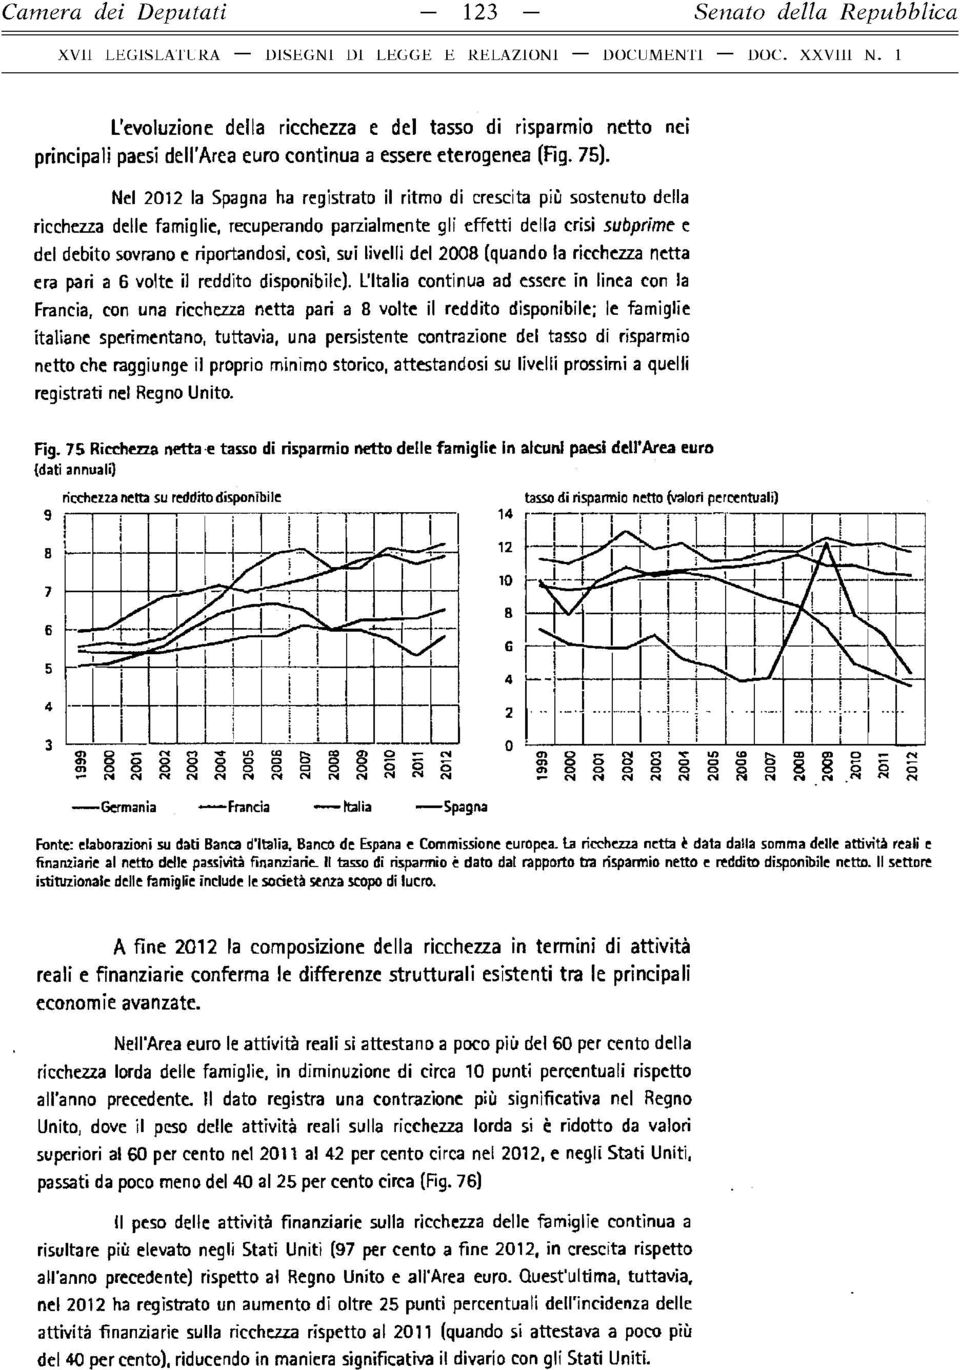 Nel 2012 la Spagna ha registrato il ritmo di crescita più sostenuto della ricchezza delle famiglie, recuperando parzialmente gli effetti della crisi subprime e del debito sovrano e riportandosi,